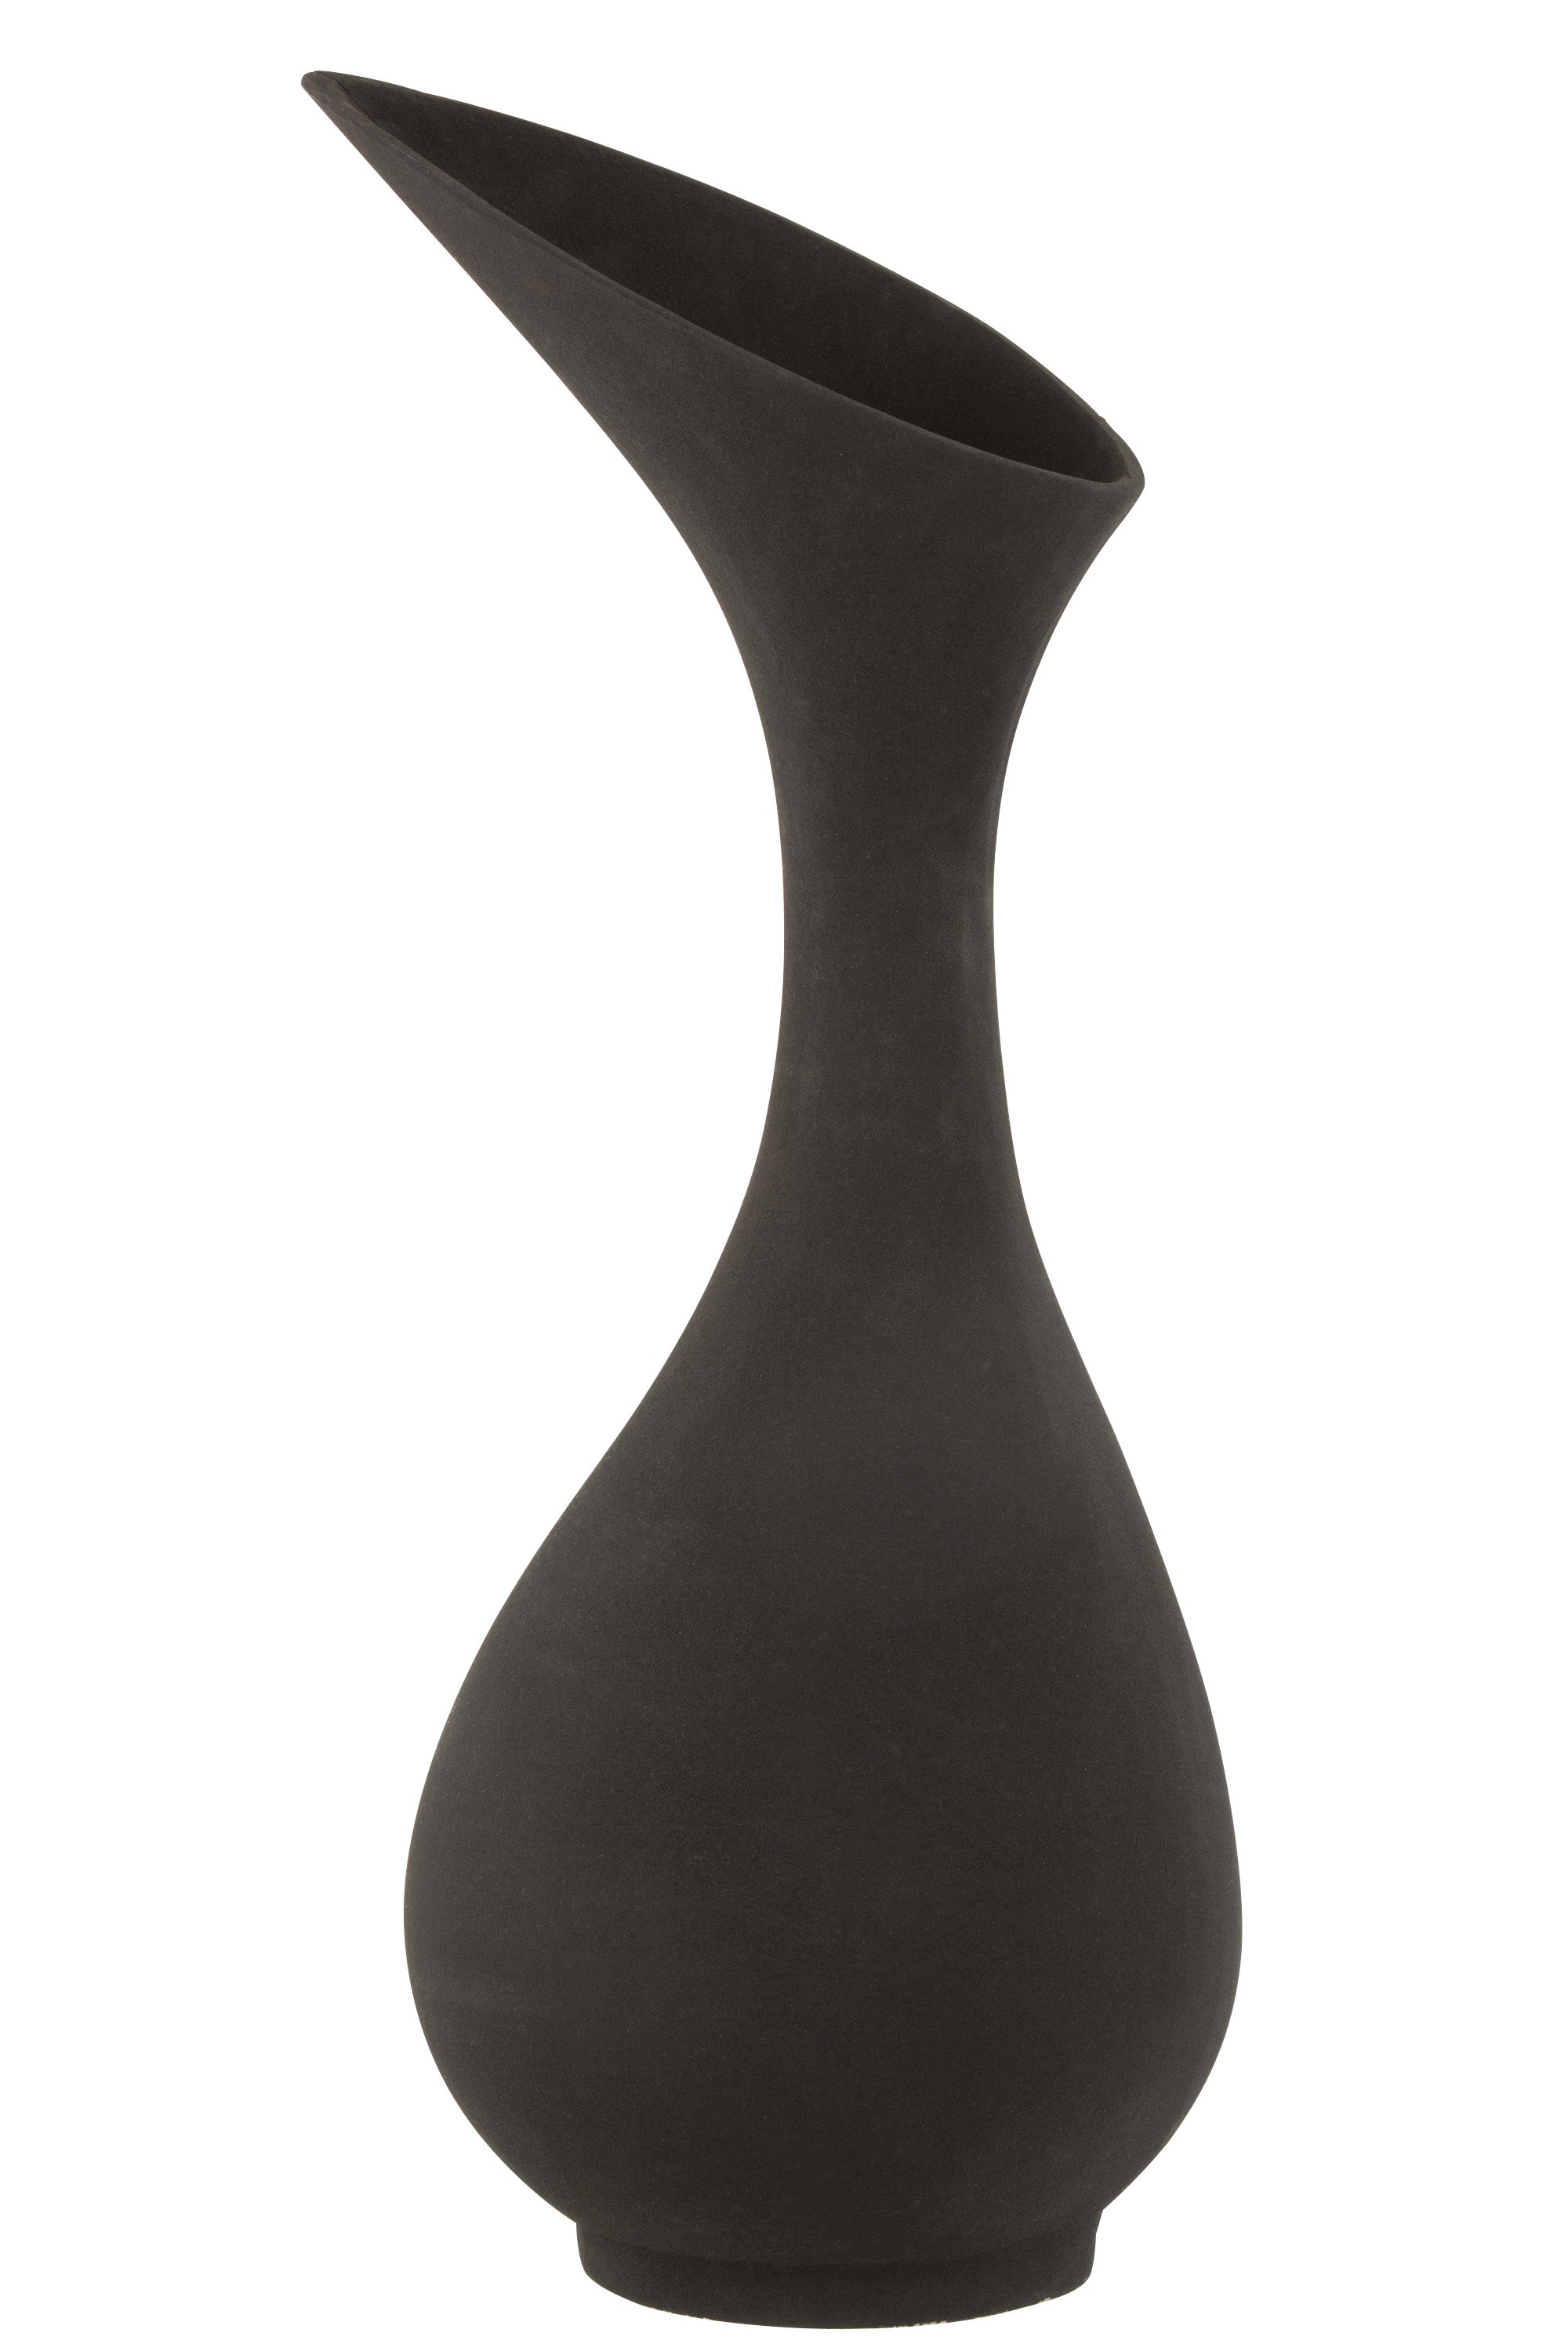 Deko Vase aus matt schwarzem Aluminium in leicht bauchiger Form, mit schmalem Hals, der sich an der Öffnung schräg oval nach oben zieht.